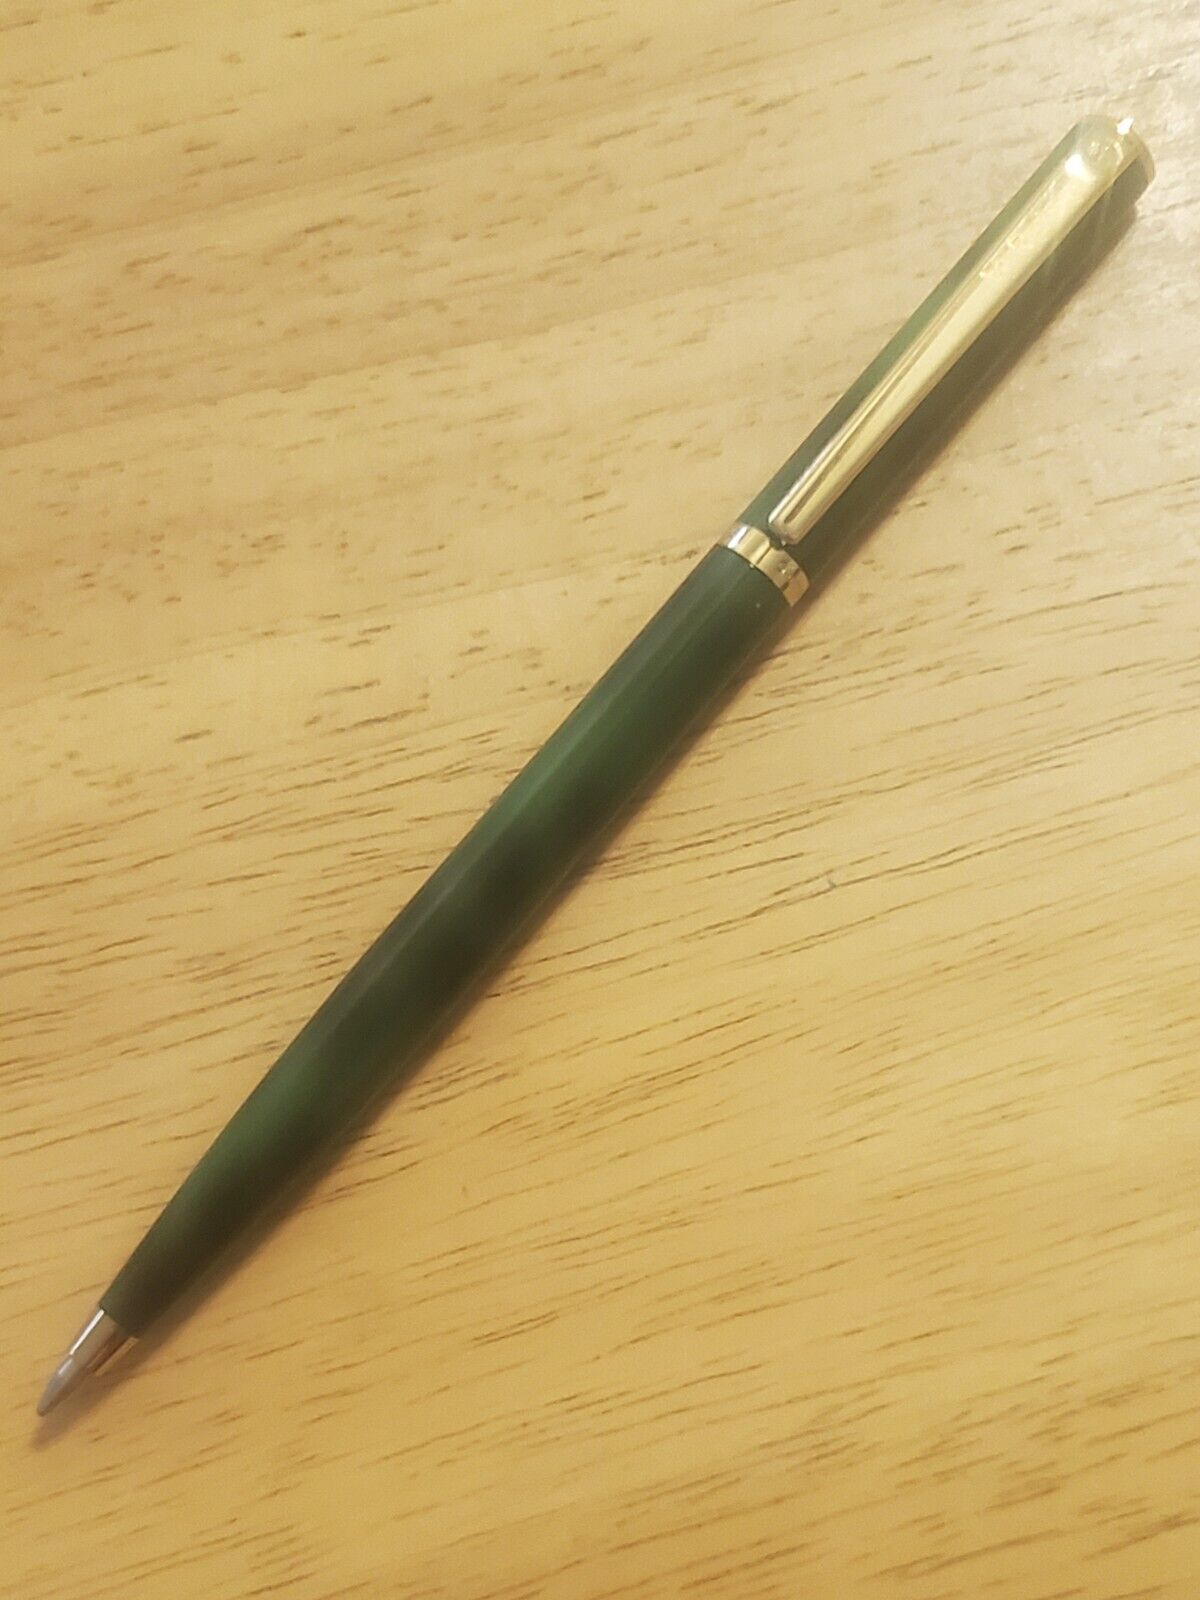 Elysee 70 line Laque Green ballpoint pen RARE PEN